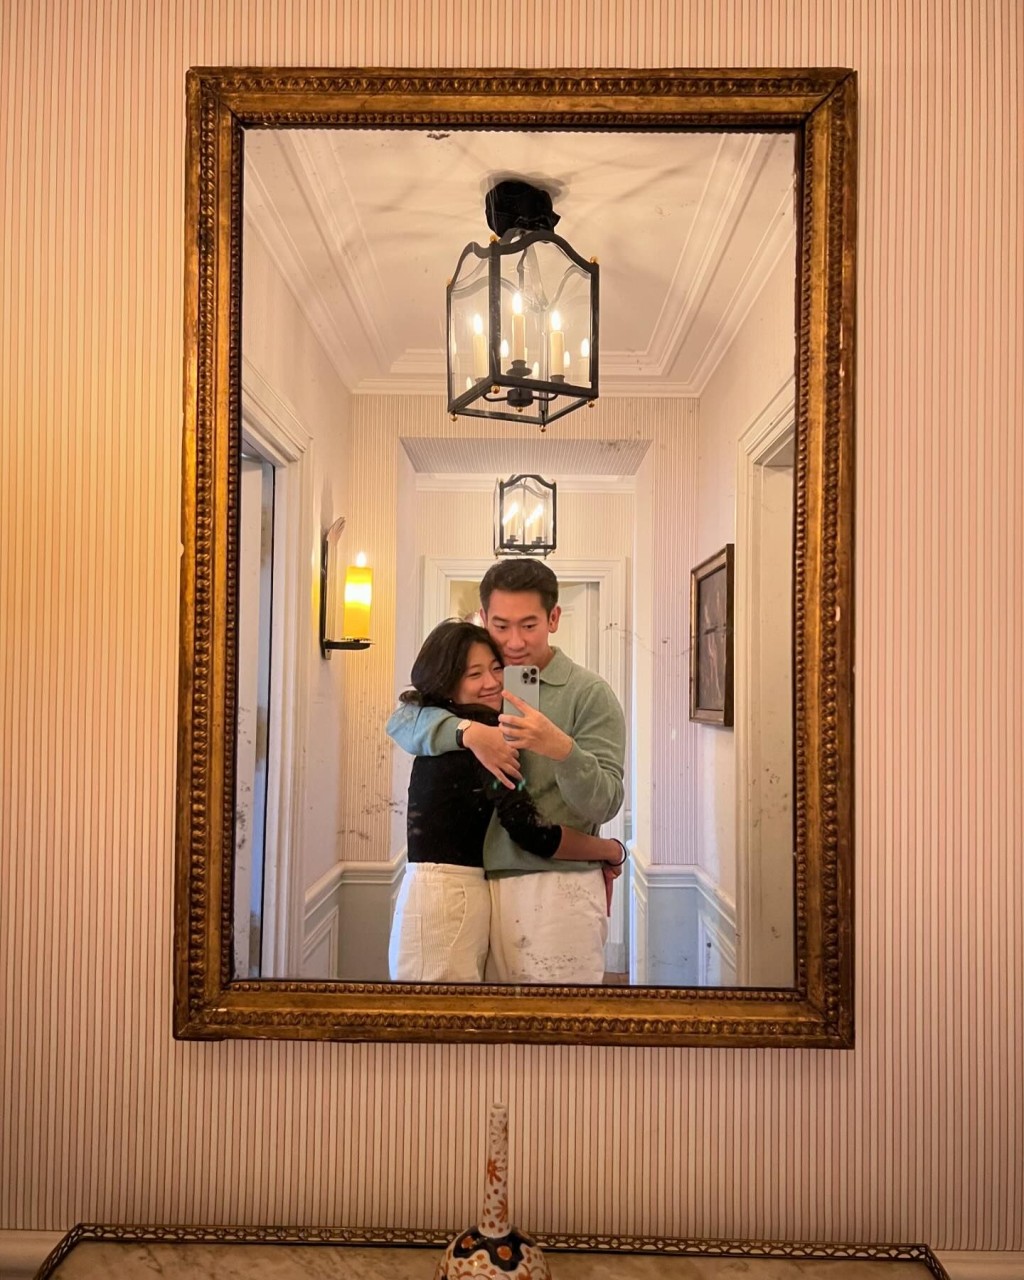 兩人亦於鏡前擁抱Selfie。